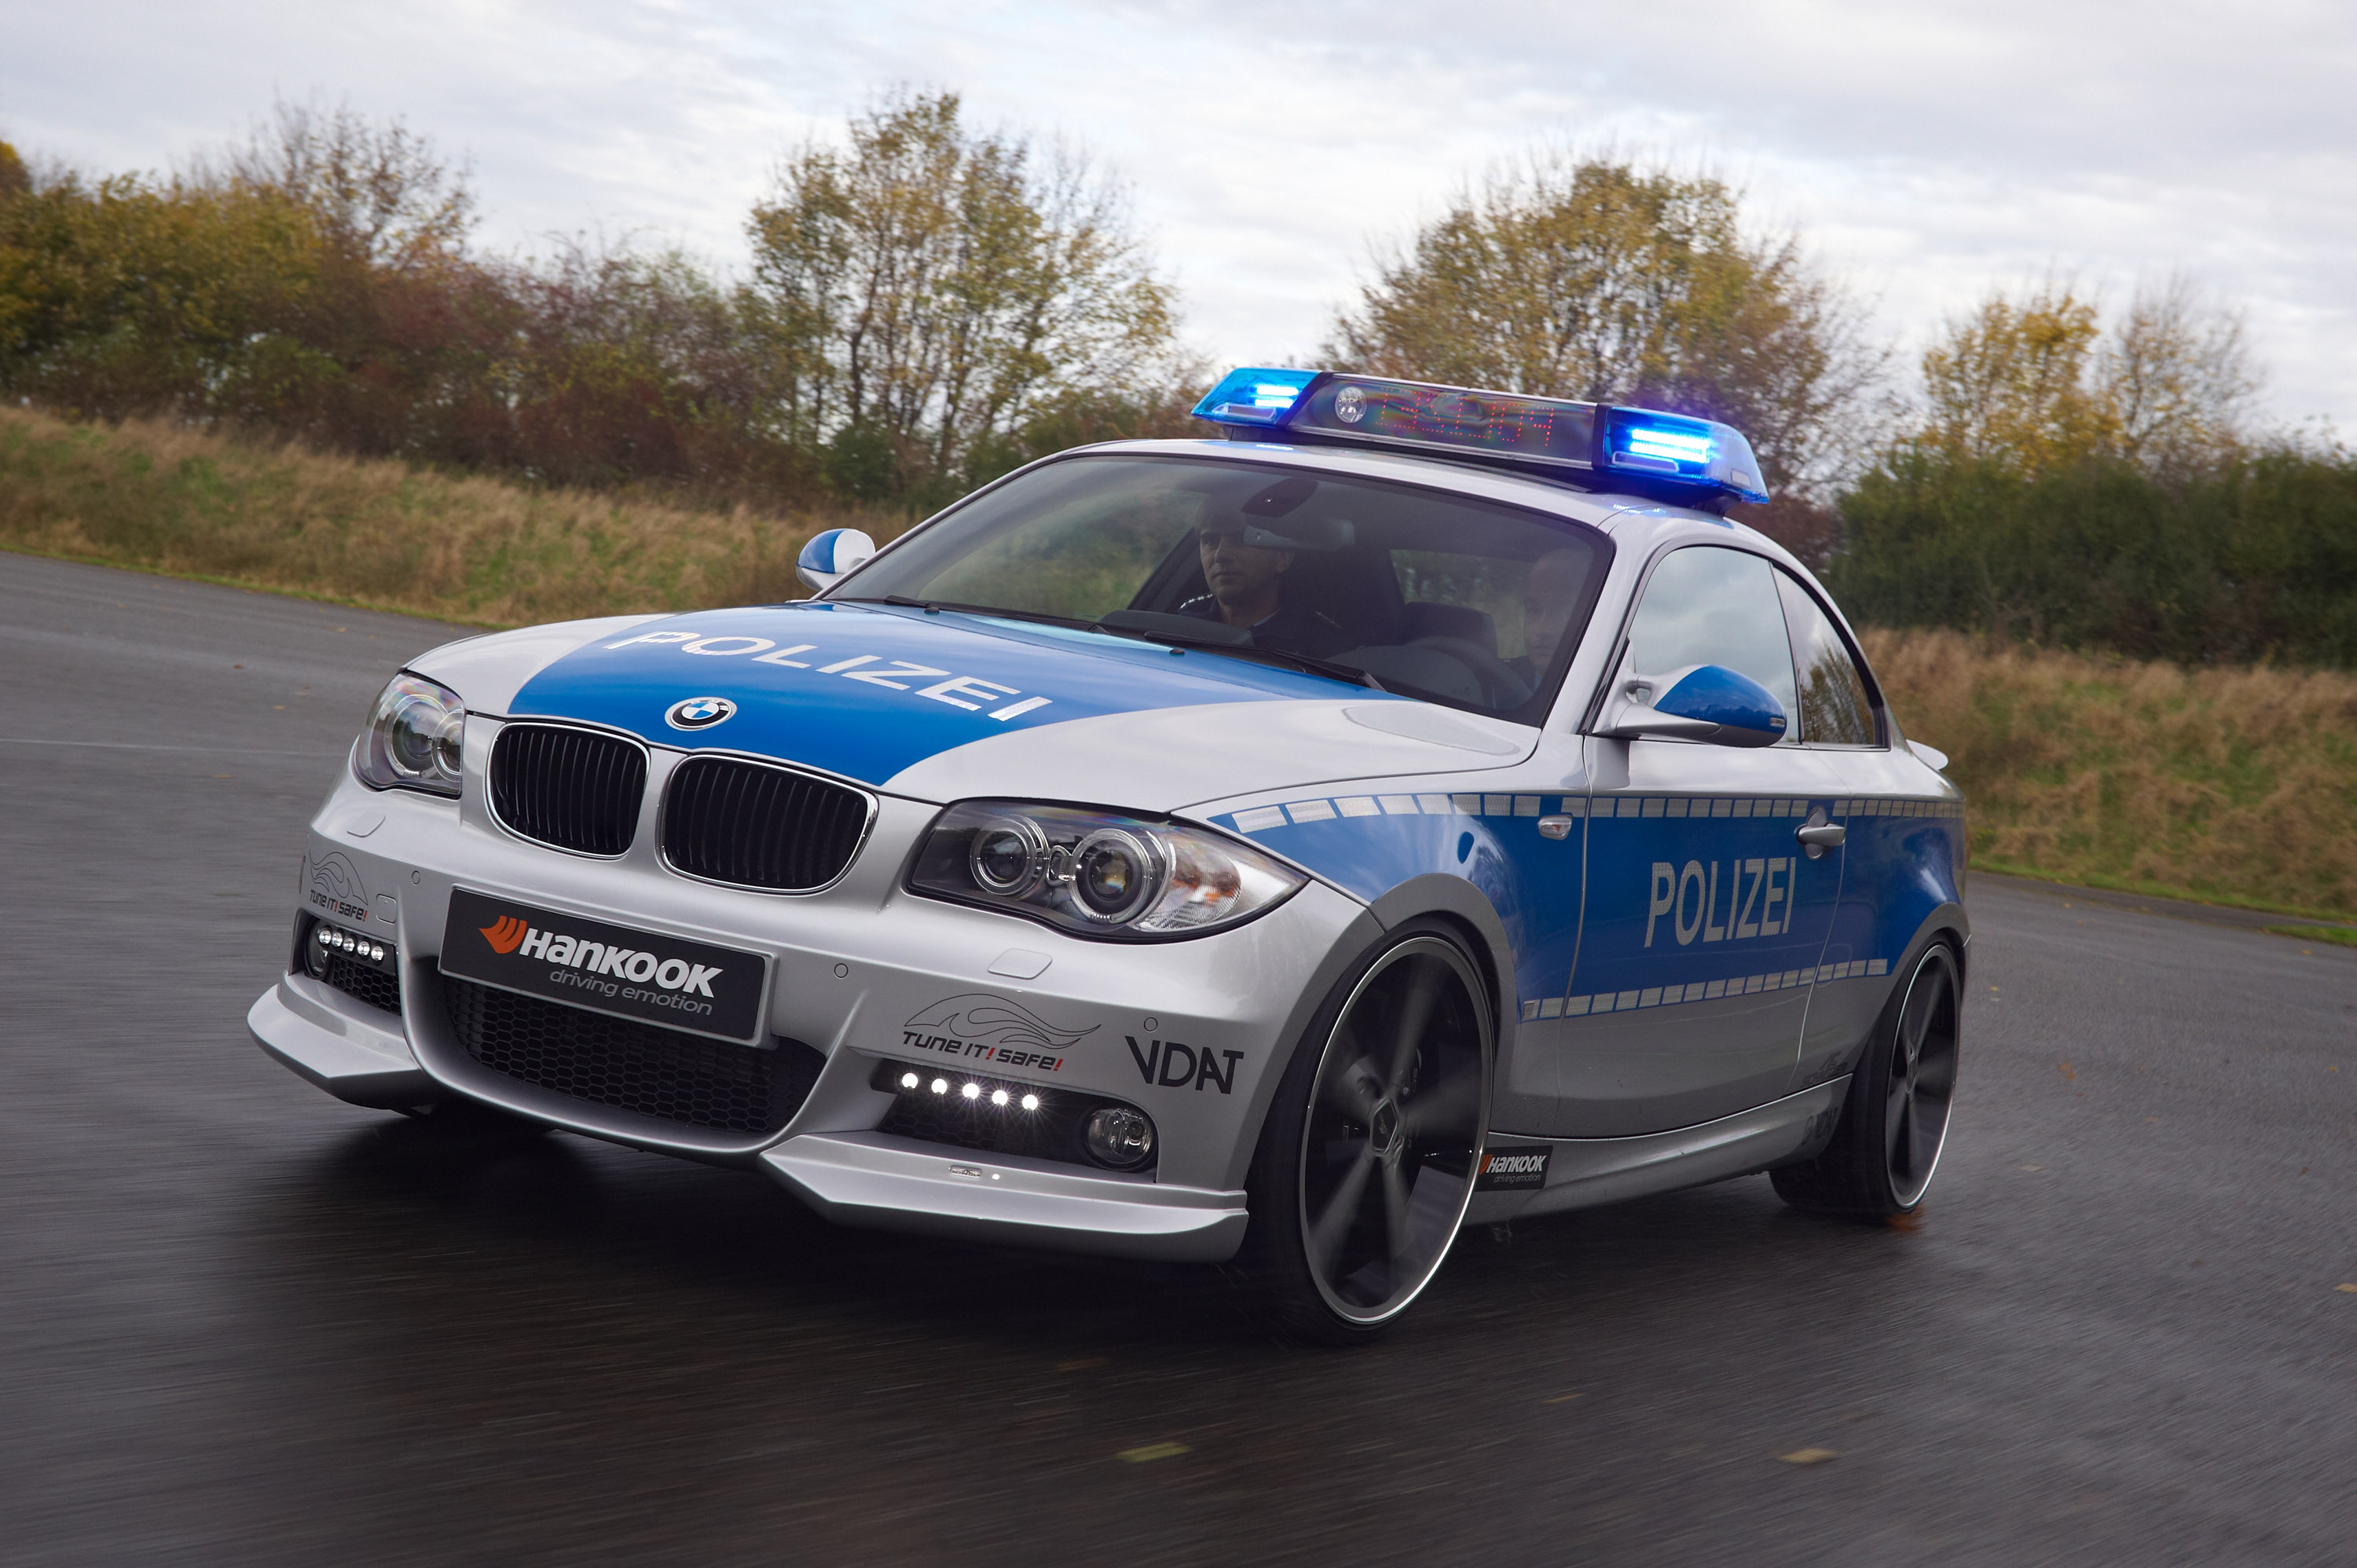 Нужны полицейские машины. BMW e39 Polizei. Полицейская машина. Машина "полиция". Автомобиль «полиция».